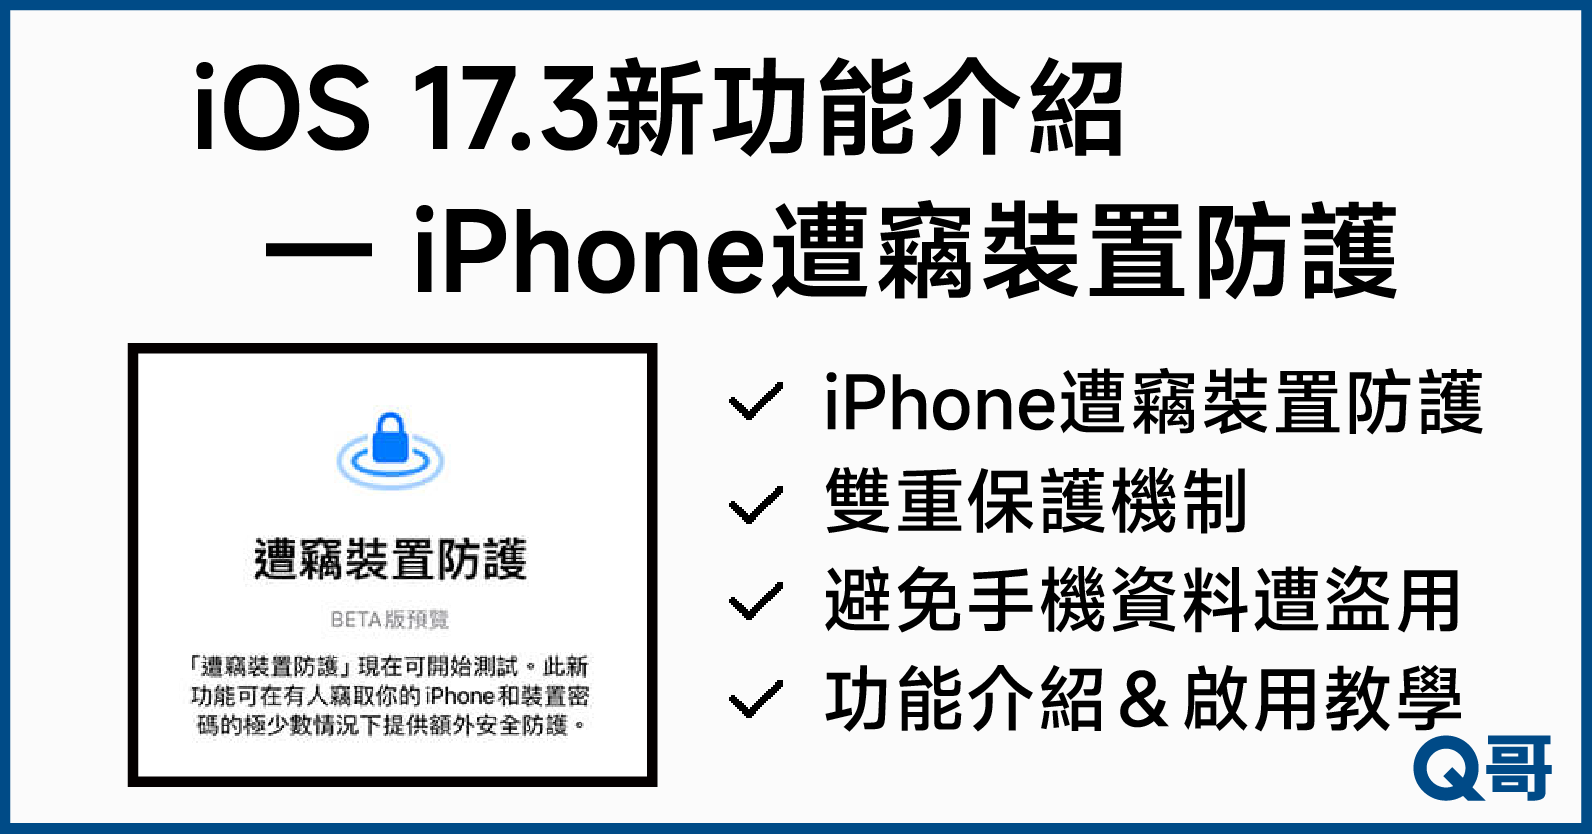 iOS17.3新功能,iPhone遭竊裝置防護介紹,手機被偷怎麼辦